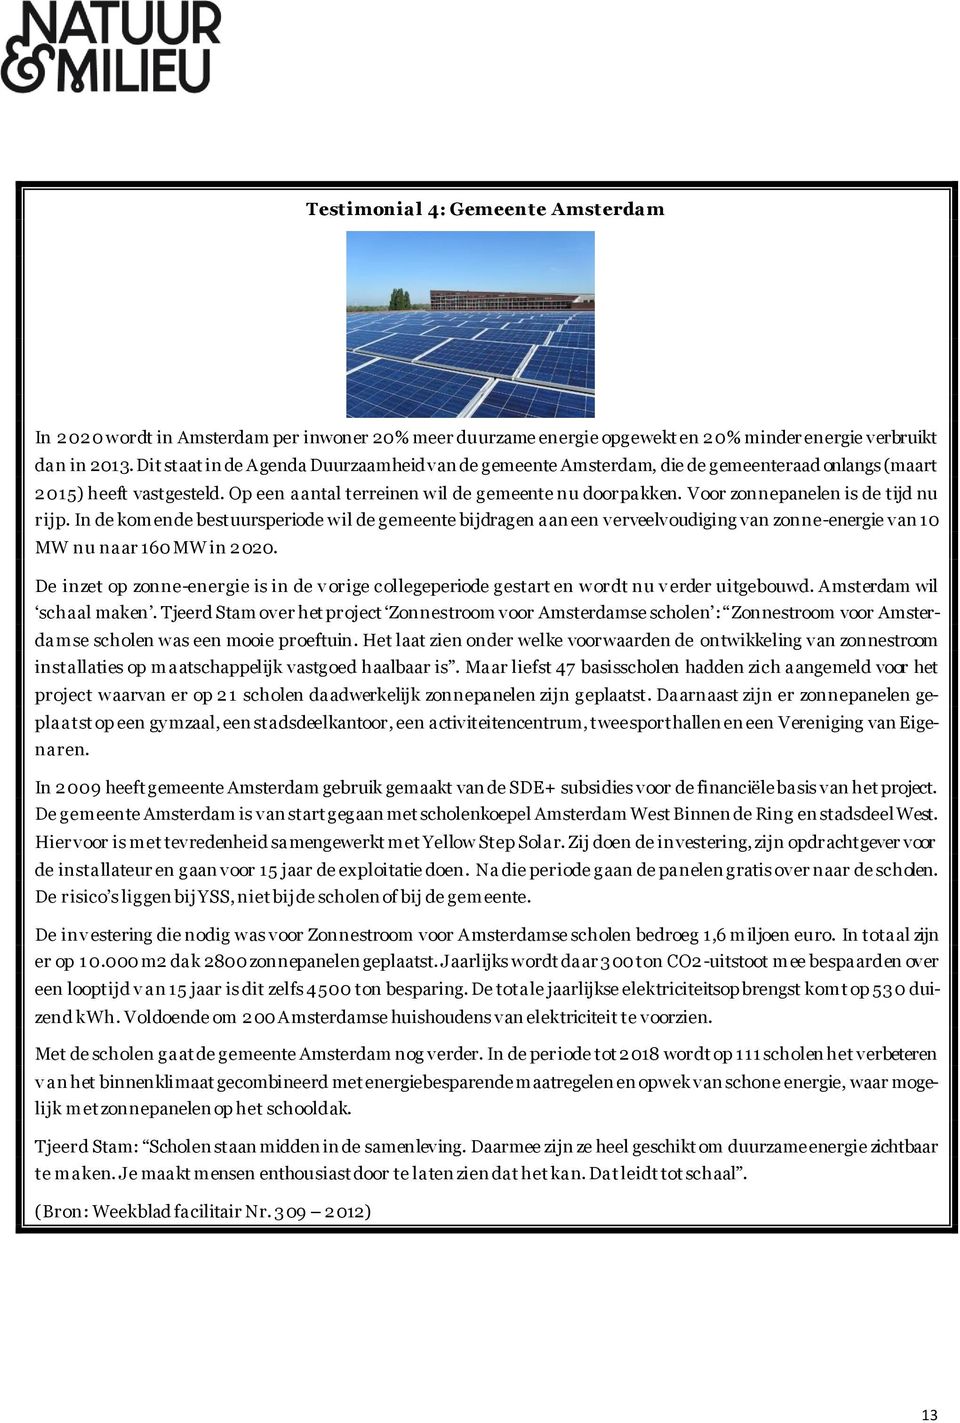 Voor zonnepanelen is de tijd nu rijp. In de komende bestuursperiode wil de gemeente bijdragen aan een verveelvoudiging van zonne-energie van 10 MW nu naar 160 MW in 2020.